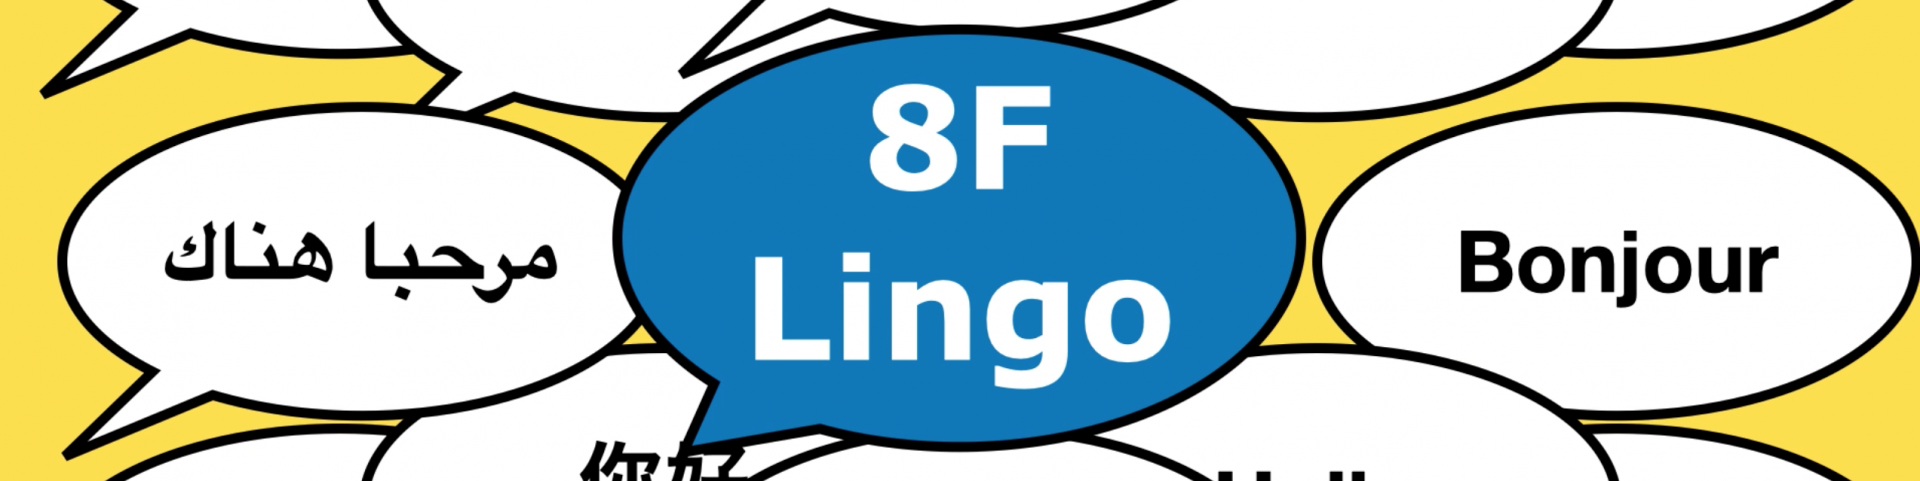 8F Lingo.com